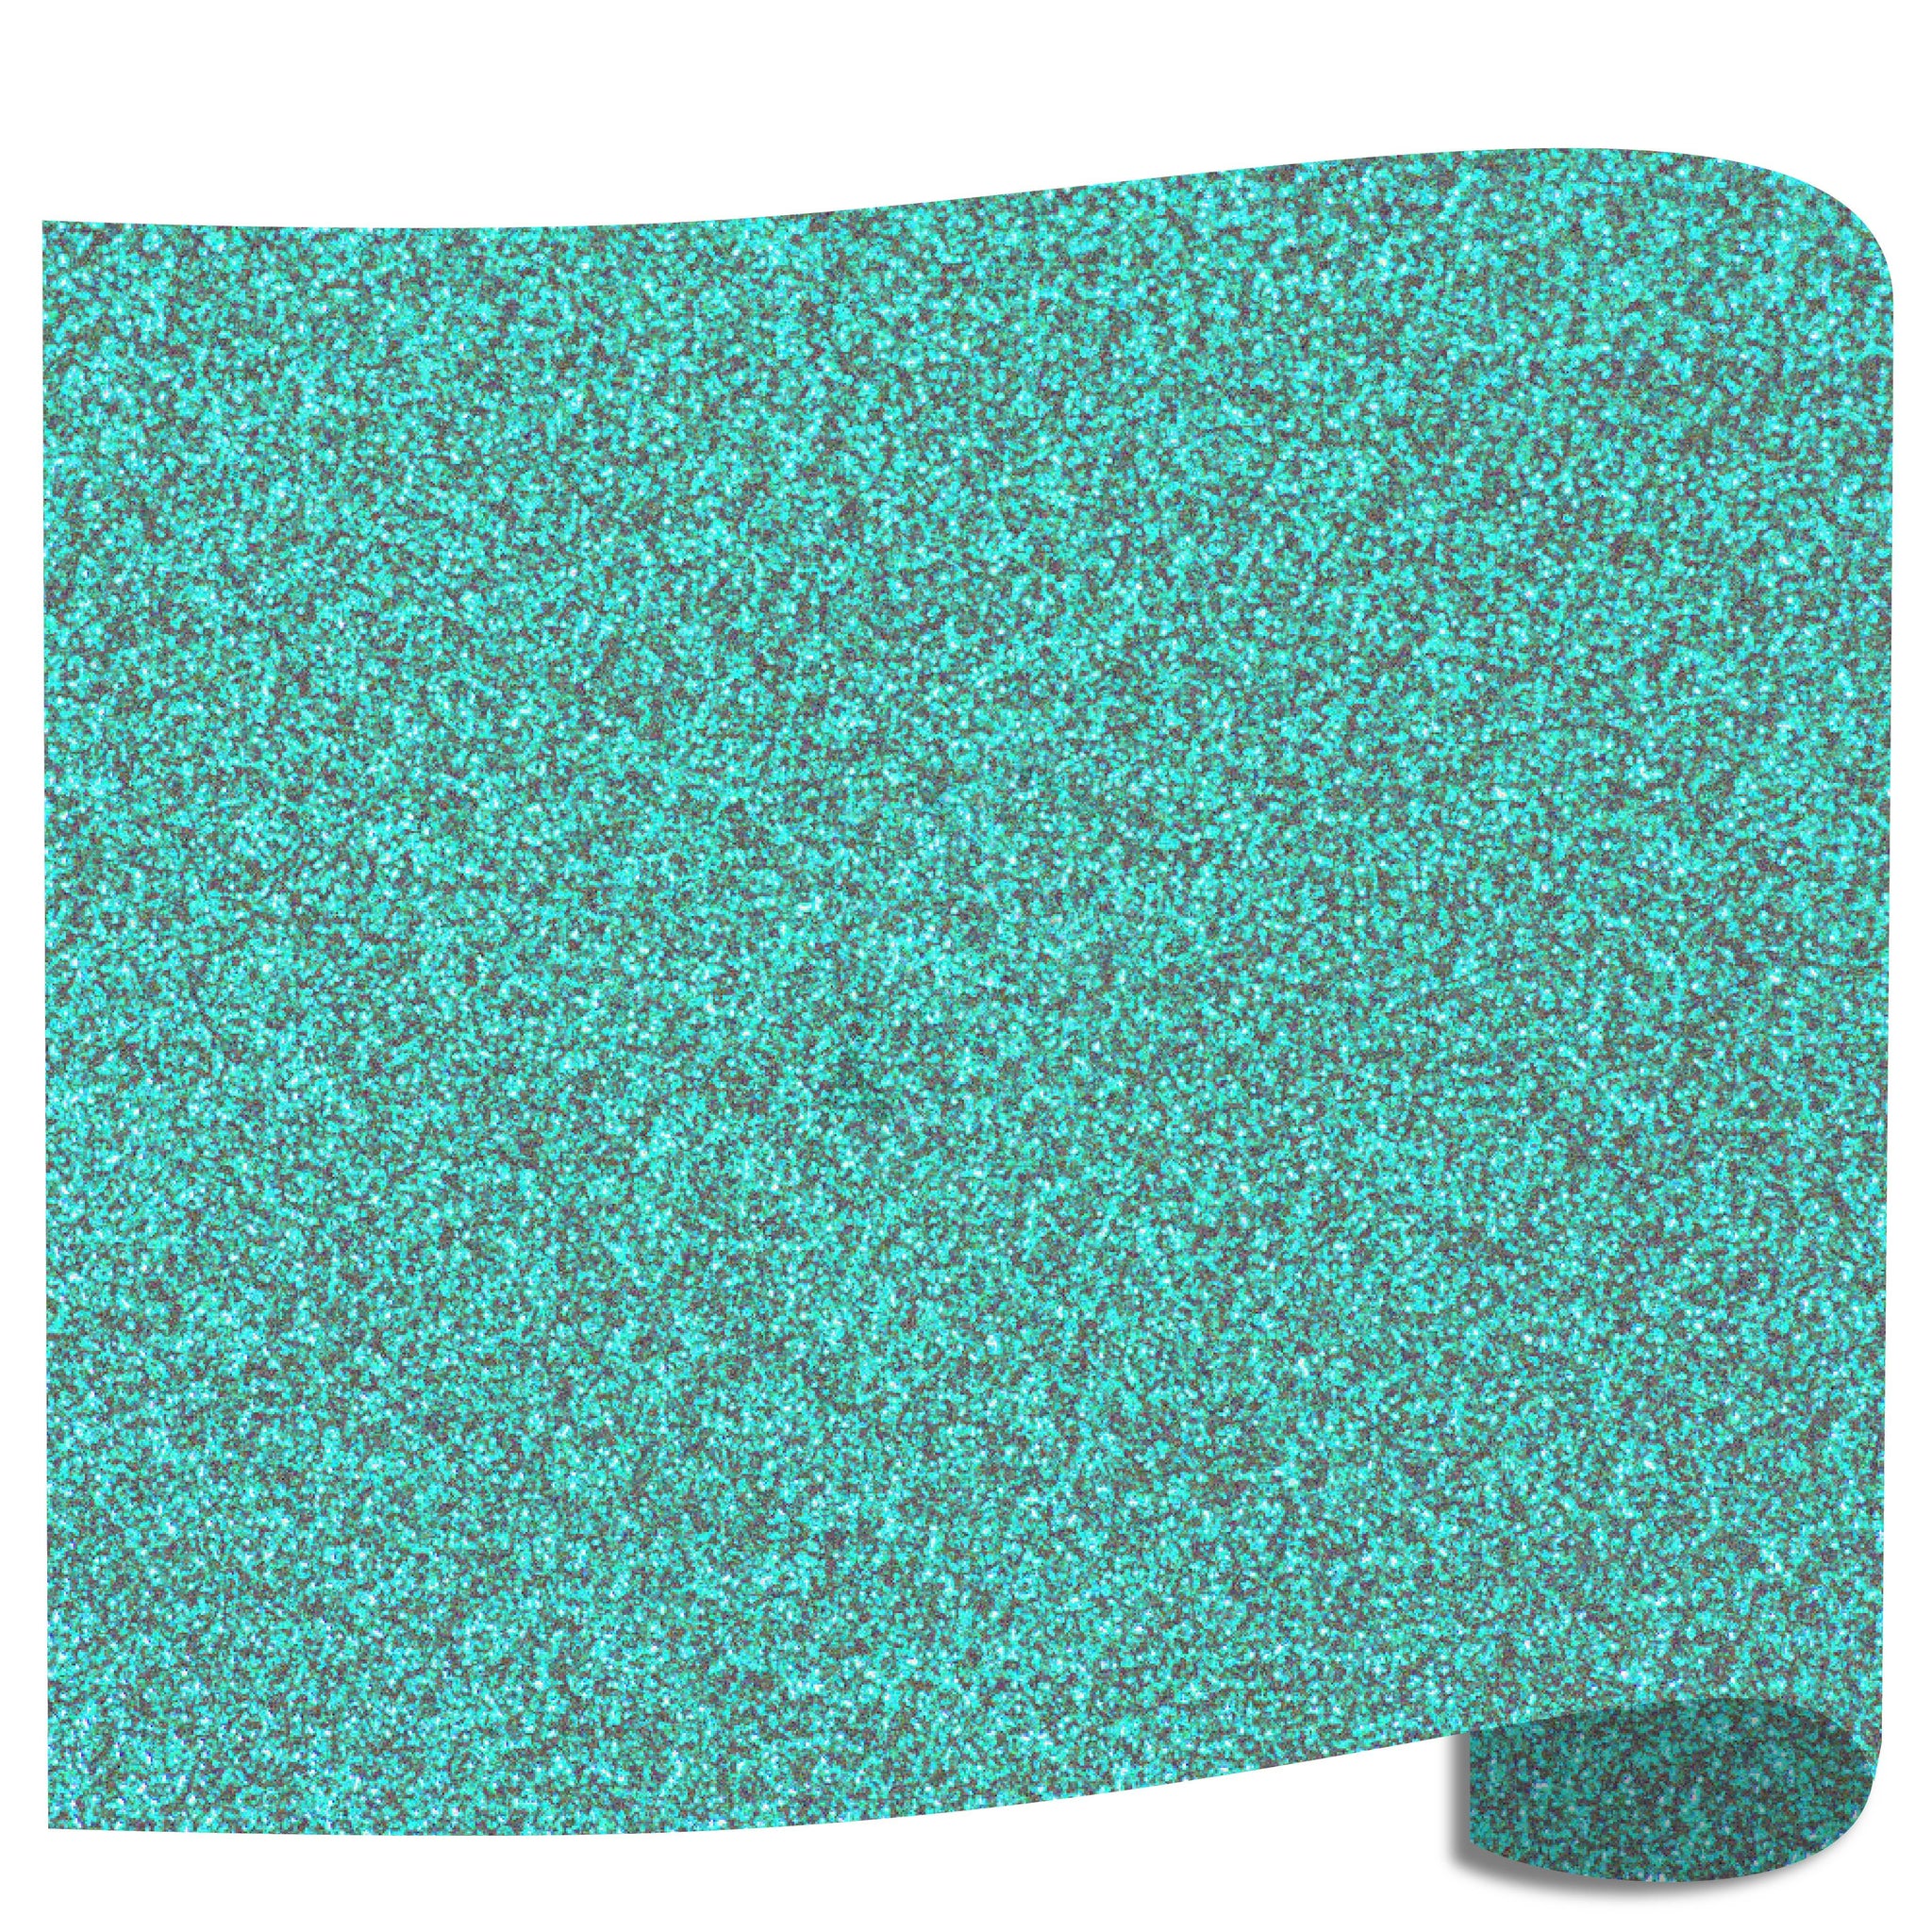 Siser Glitter Heat Transfer Vinyl (HTV) - Mermaid Blue